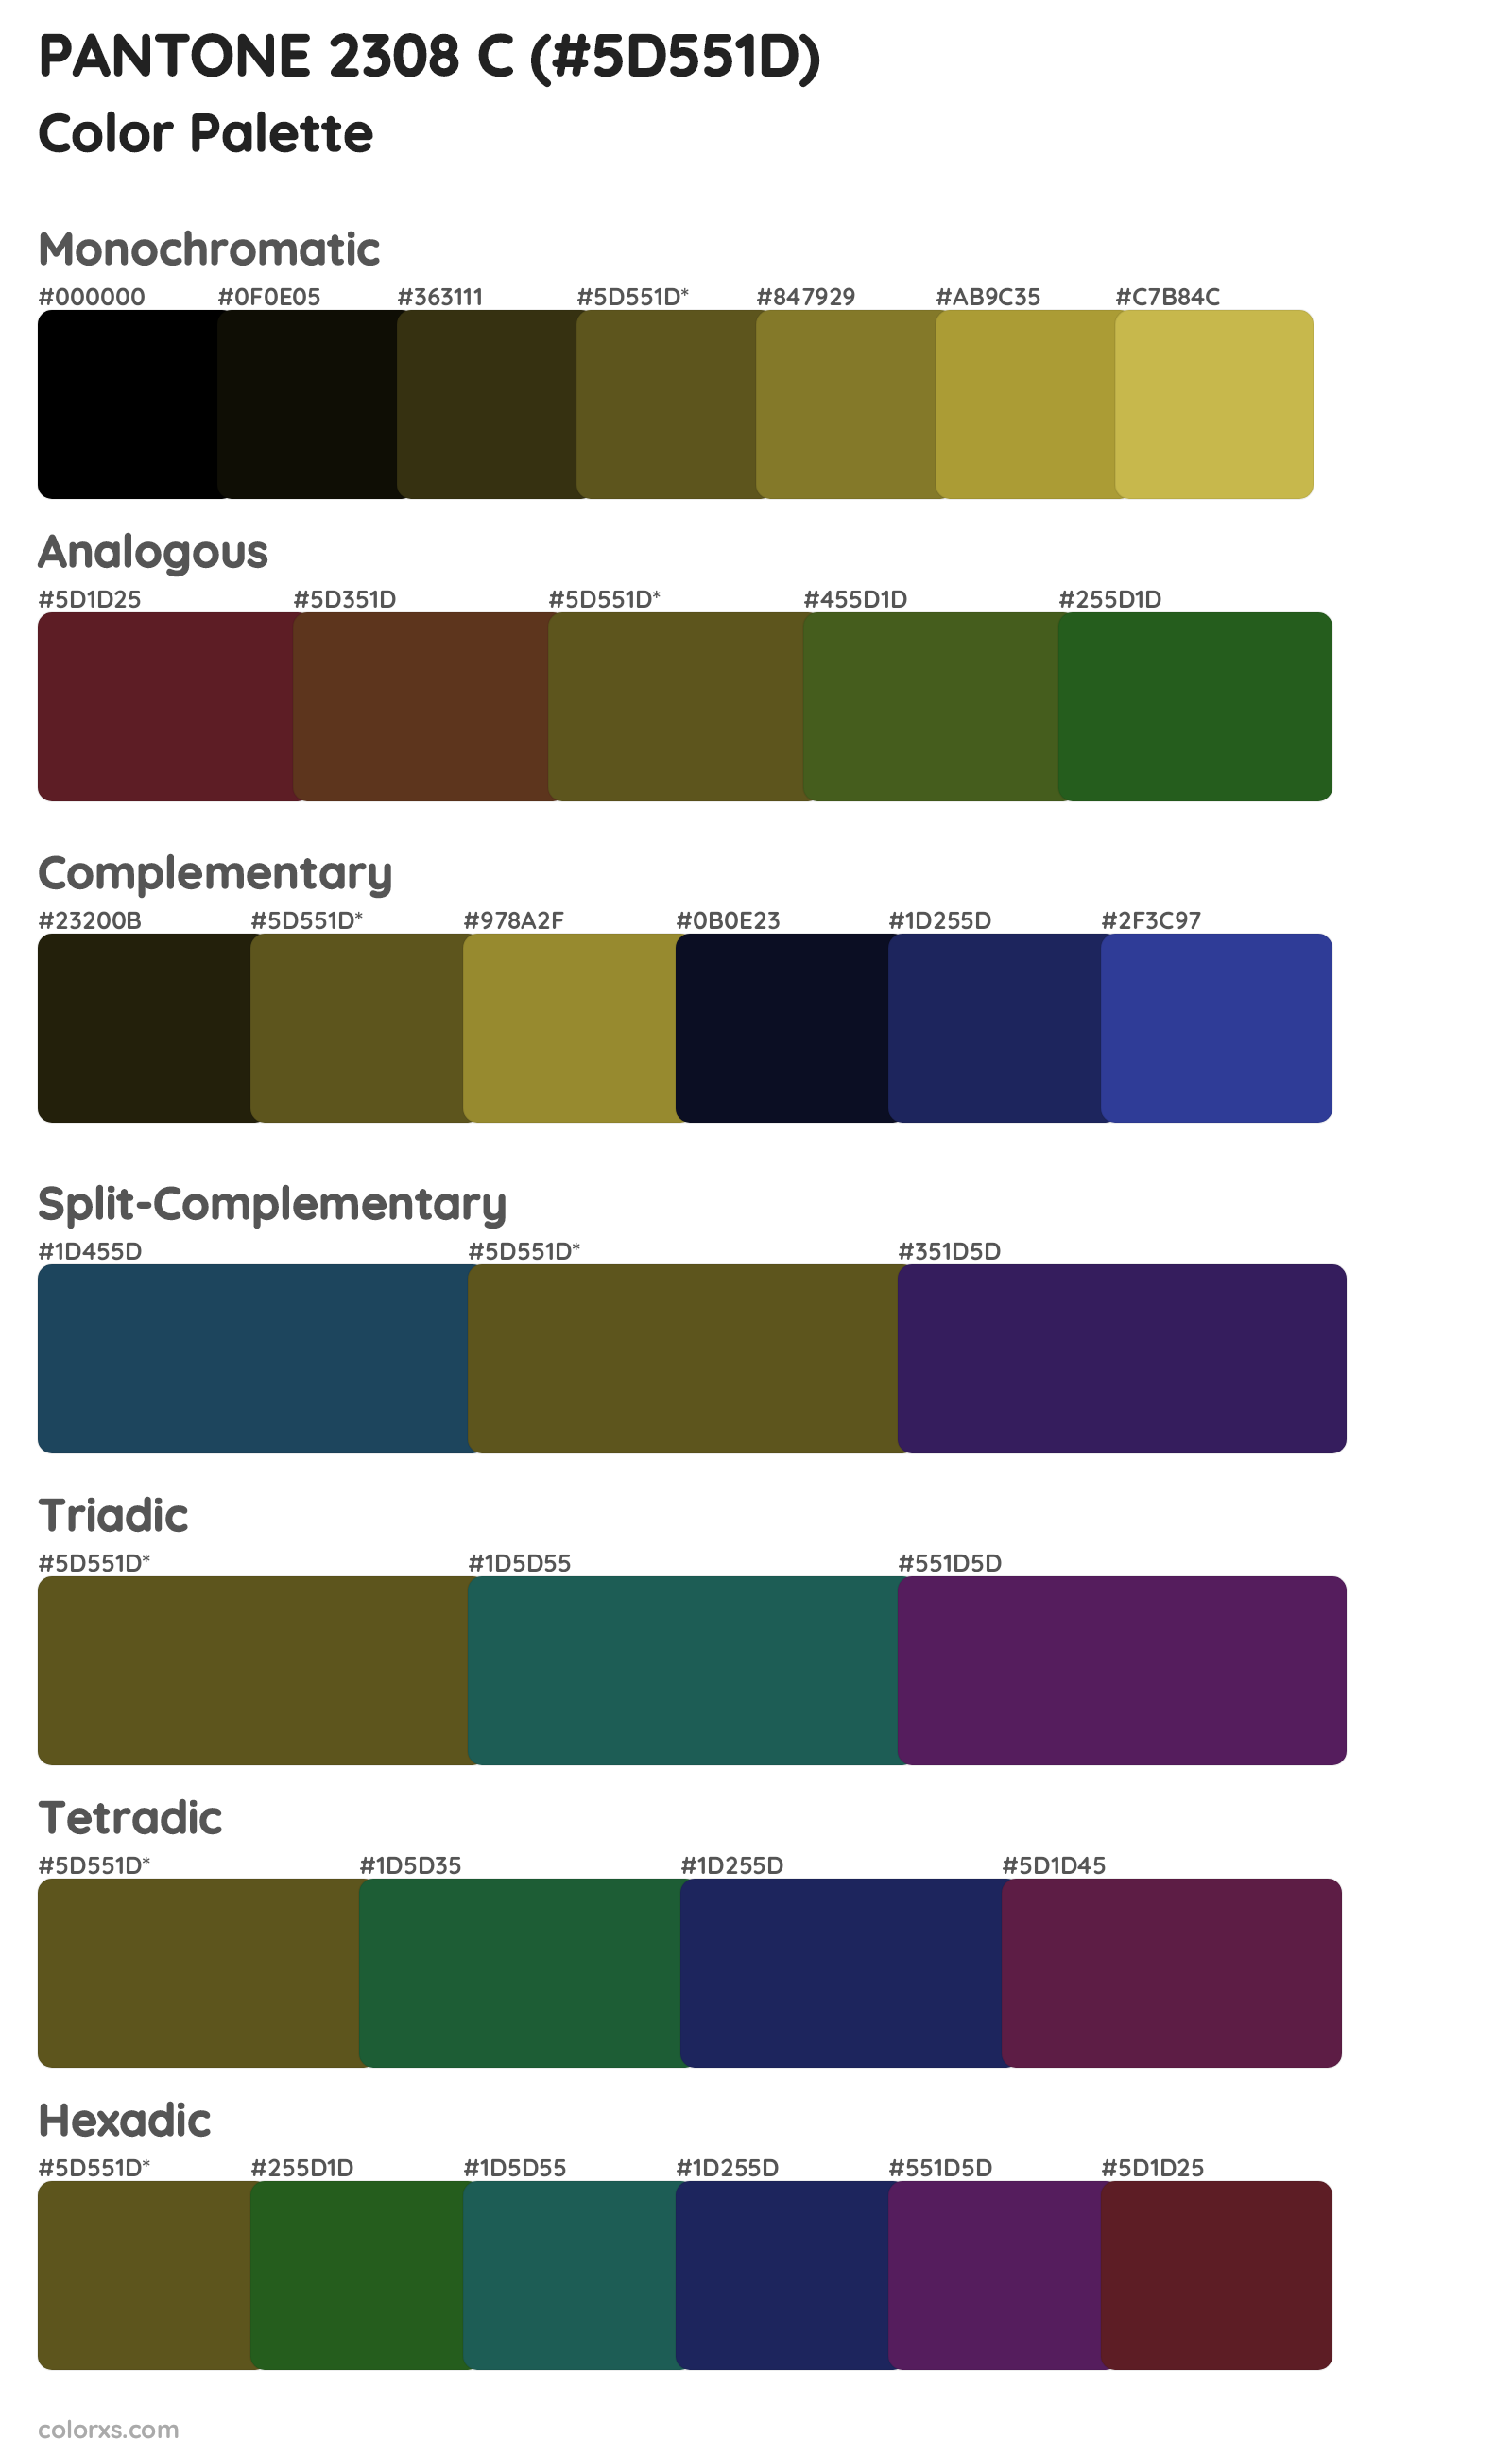 PANTONE 2308 C Color Scheme Palettes